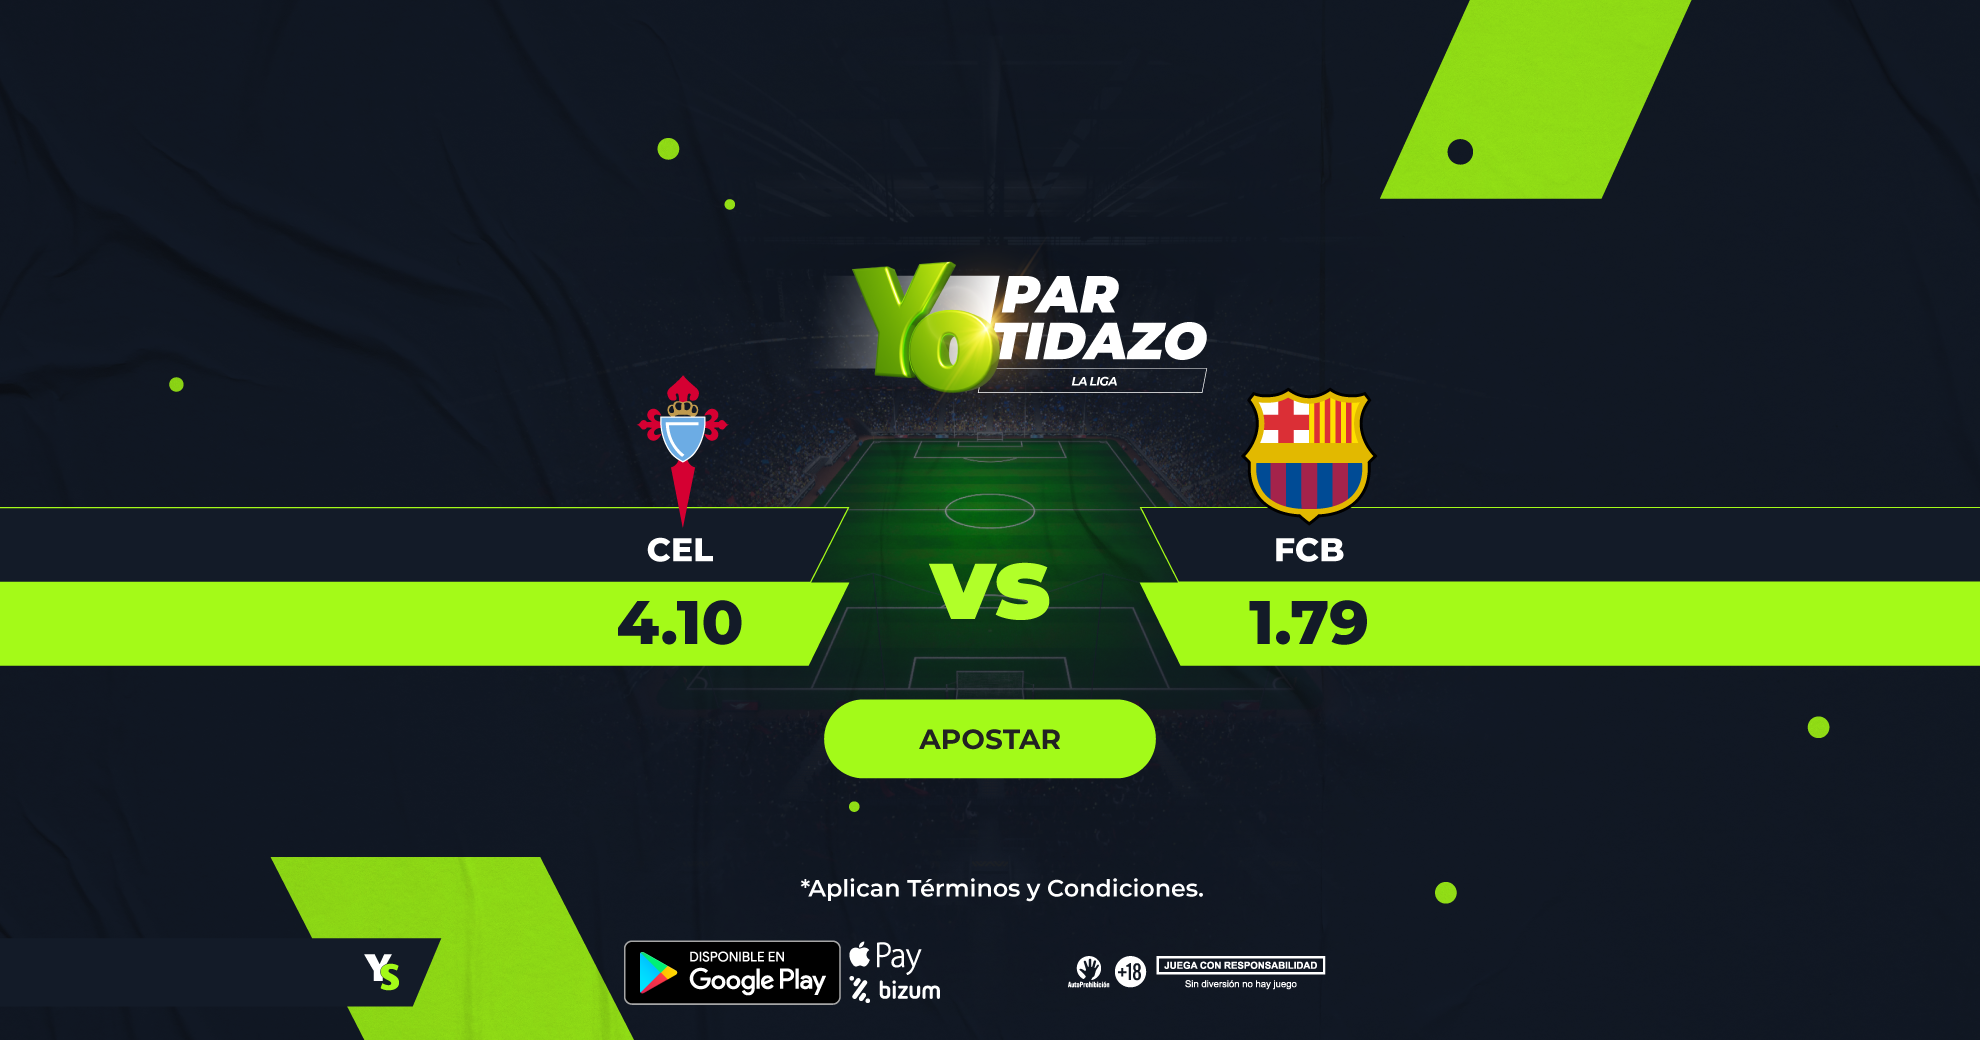 YoPartidazo en Vigo: Los pronósticos del Celta vs Barcelona